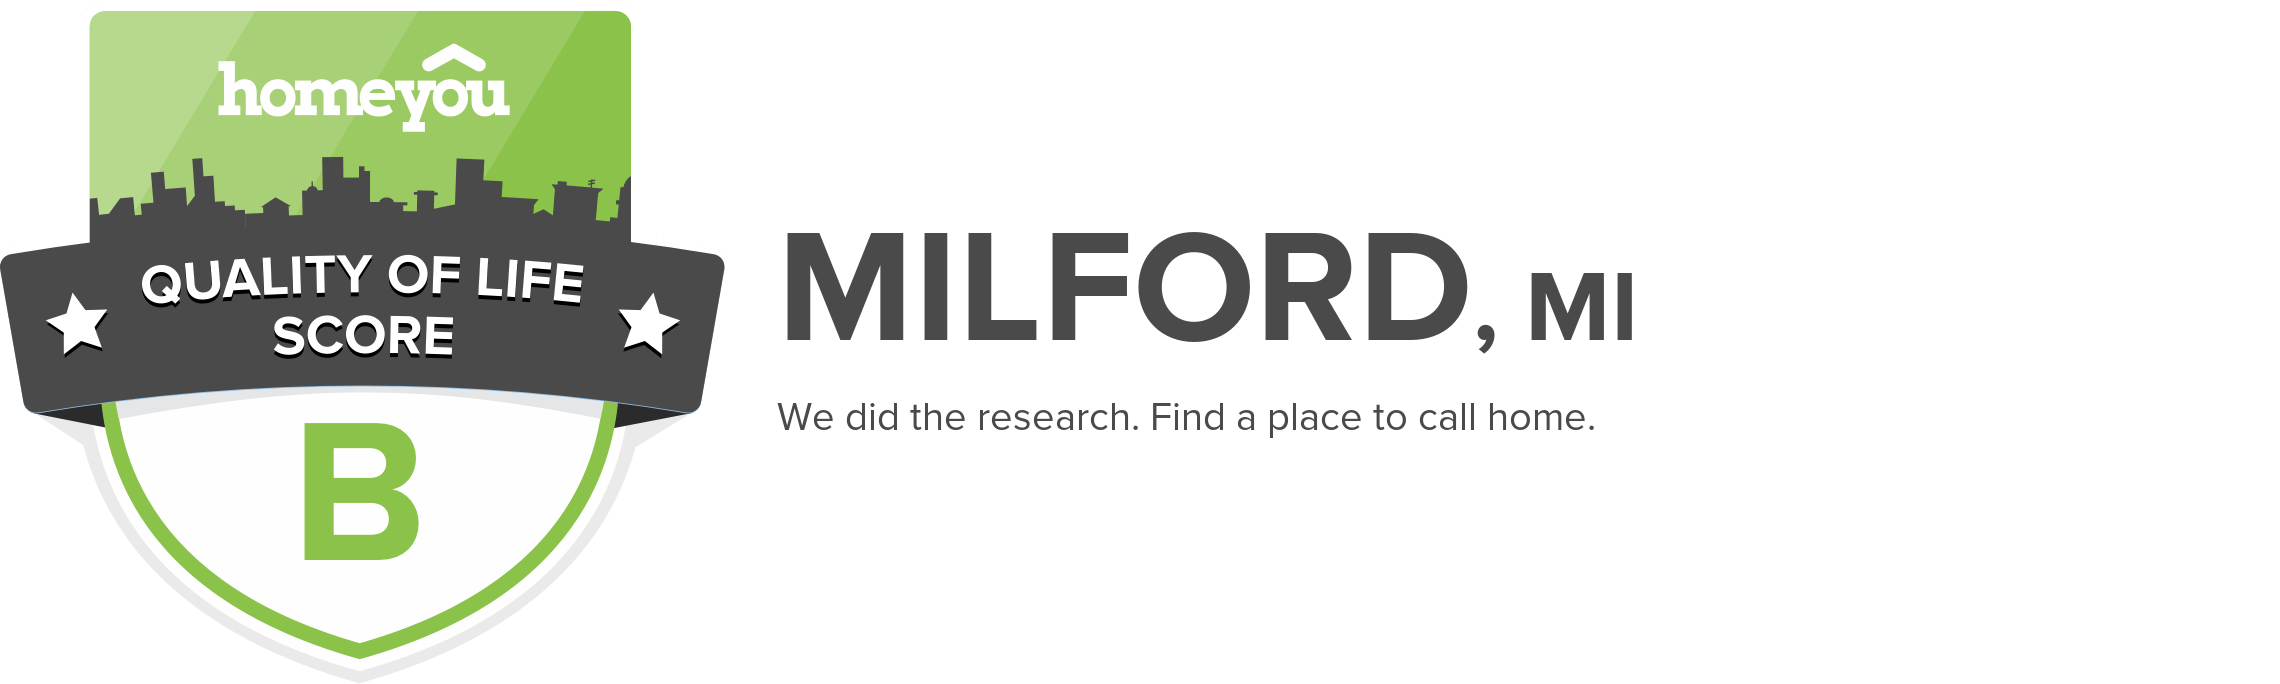 Milford, MI